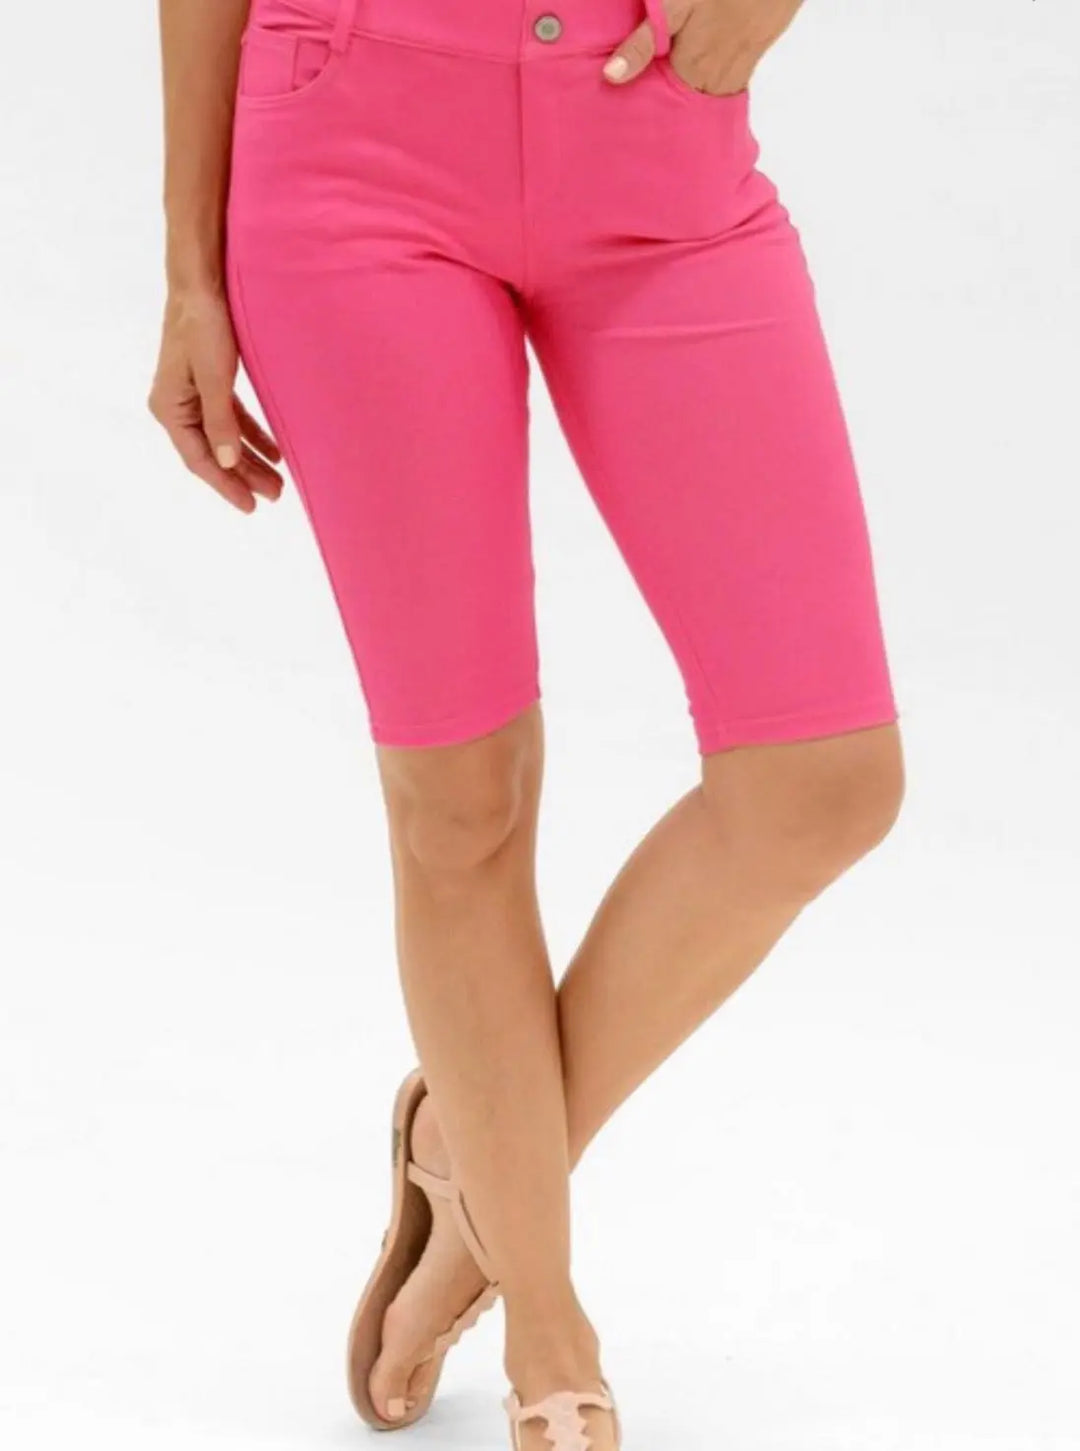 Bermuda Jeggings - Fuchsia-shorts-Yelete-Styled by Steph-Women's Fashion Clothing Boutique, Indiana